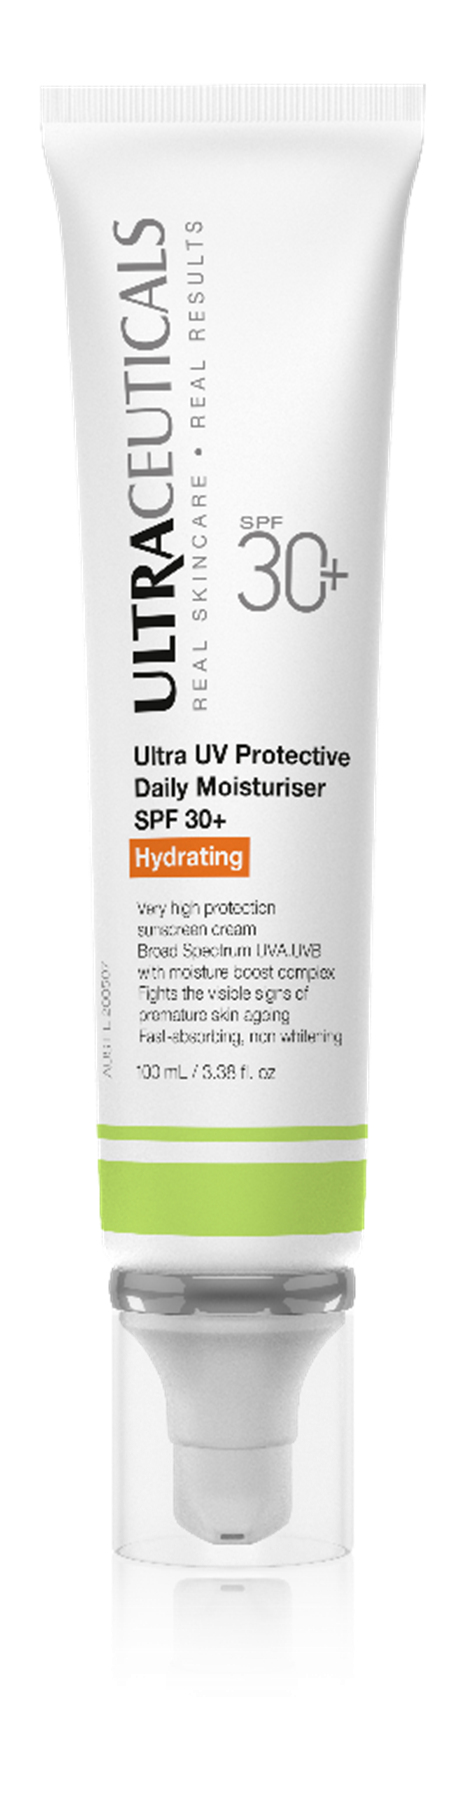 PROTECTIVE DAILY MOISTURIZER SPF30+ HYDRATING Защитный увлажняющий крем SPF 30 с эффектом глубокой гидратации 100 мл